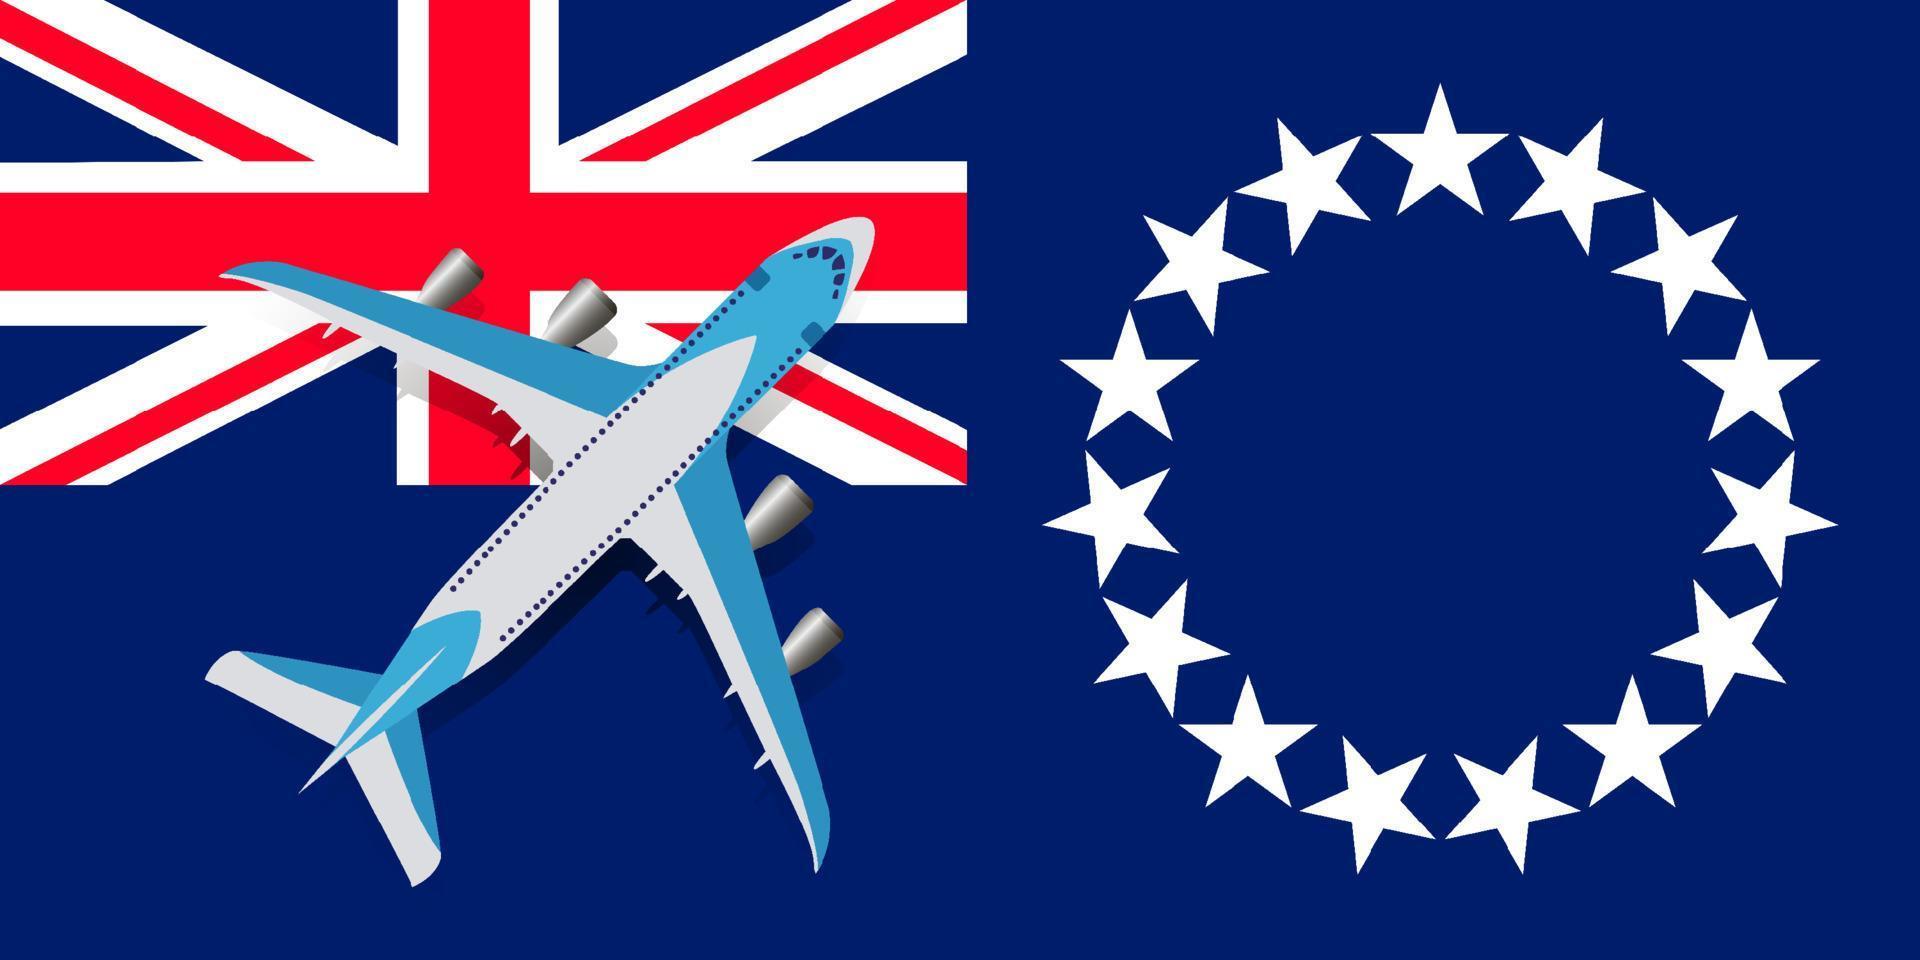 illustrazione vettoriale di un aereo passeggeri che sorvola la bandiera dell'isola di Cook. il concetto di turismo e di viaggio